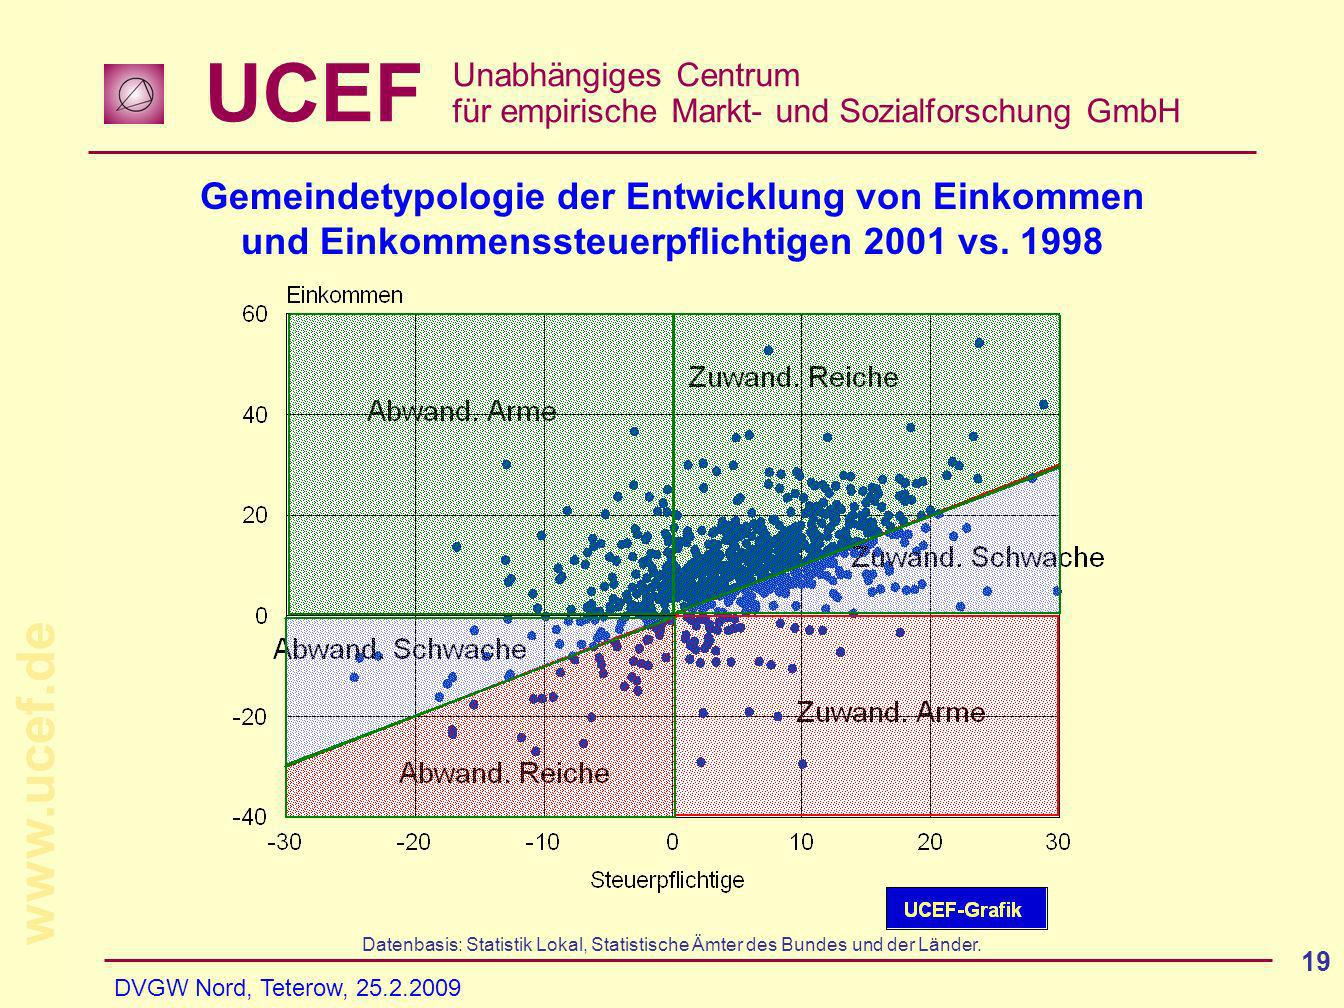 UCEF Unabhängiges Centrum für empirische Markt- und Sozialforschung GmbH   DVGW Nord, Teterow, Gemeindetypologie der Entwicklung von Einkommen und Einkommenssteuerpflichtigen 2001 vs.